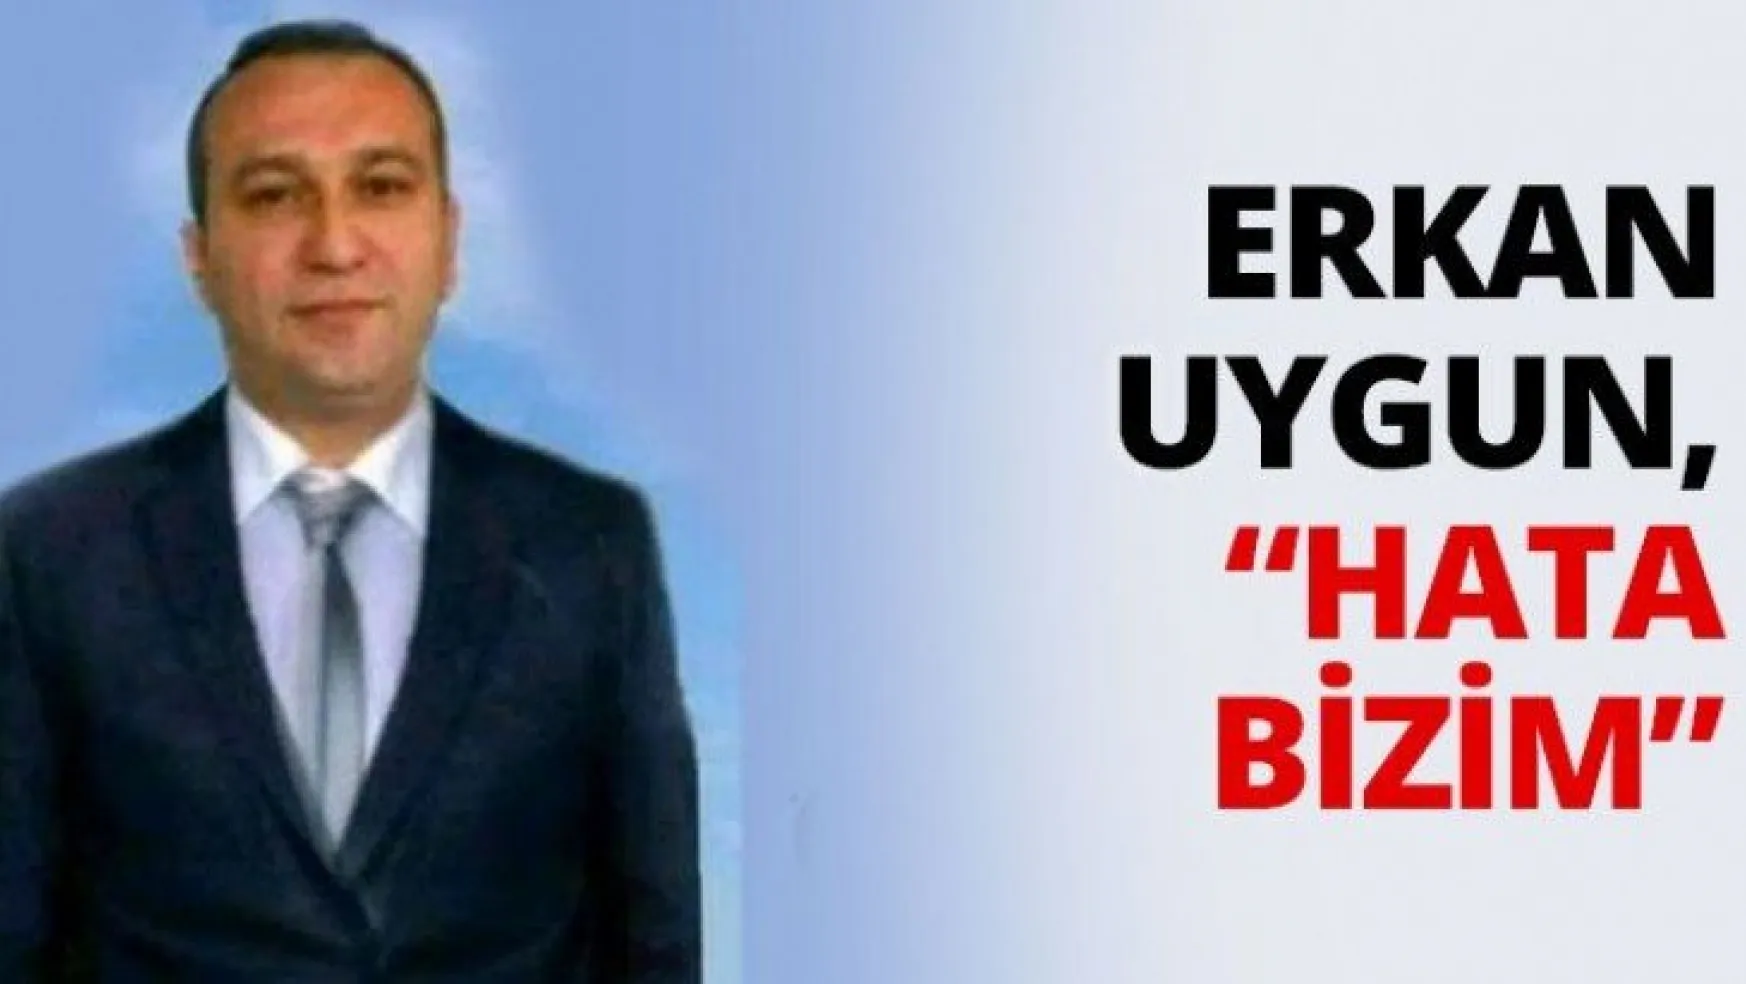 Erkan Uygun, 'Hata bizim'